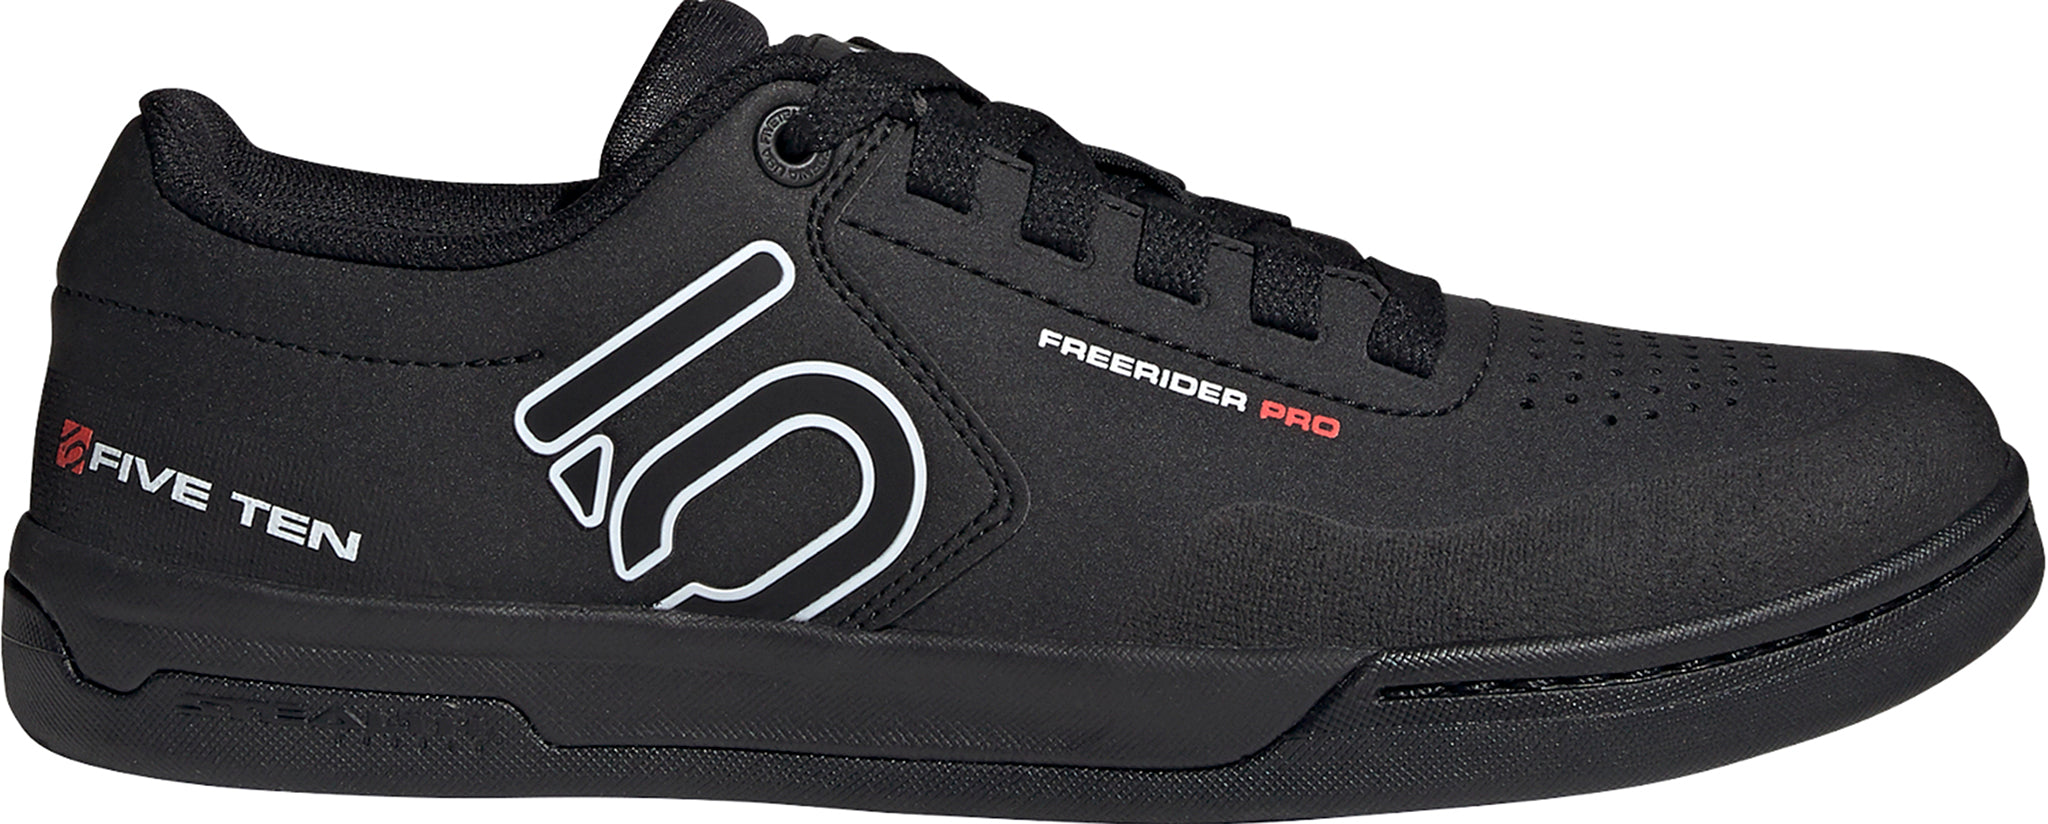 adidas x Five Ten Technical Five Ten Freerider Pro Mountain Bike Shoes ...